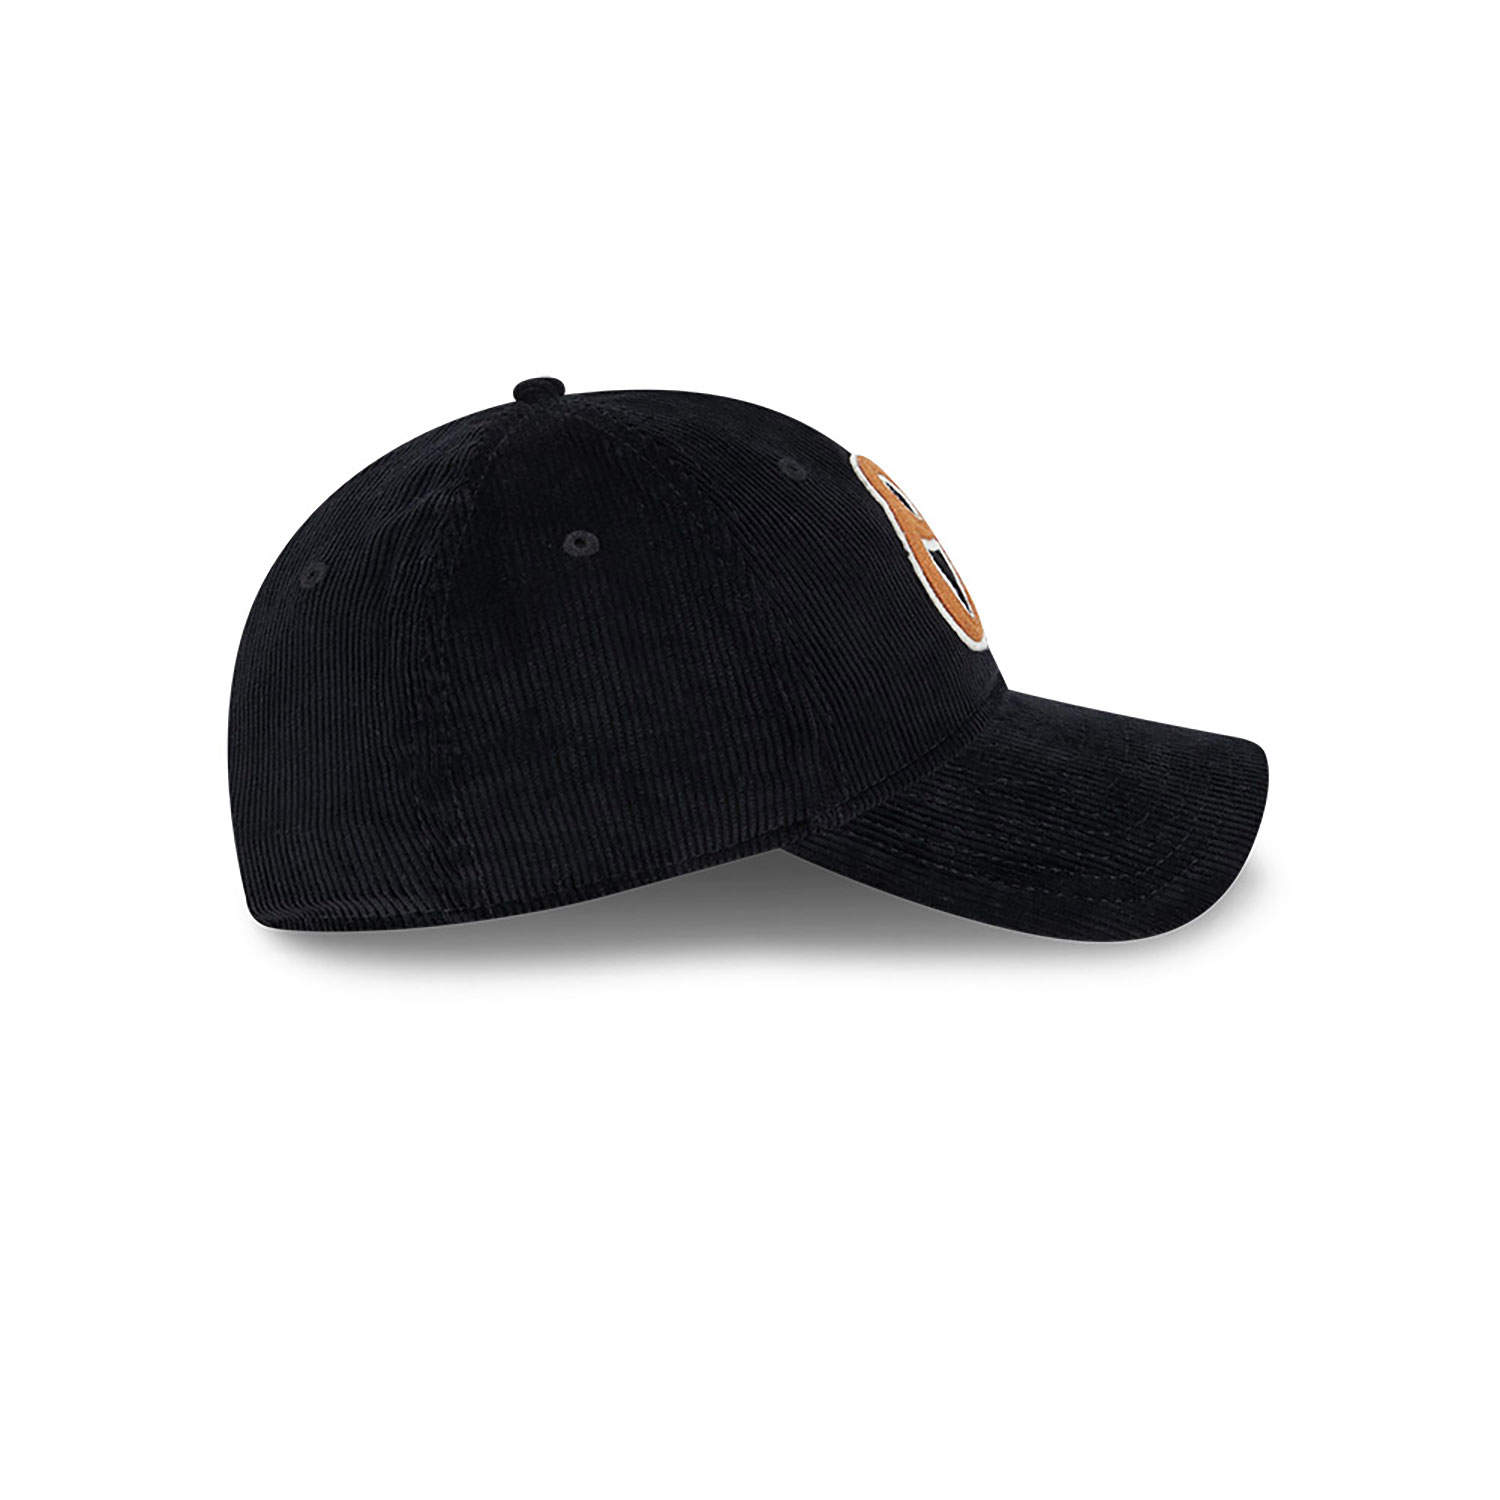 Baltimore Orioles Cord Black 9TWENTY Adjustable Cap